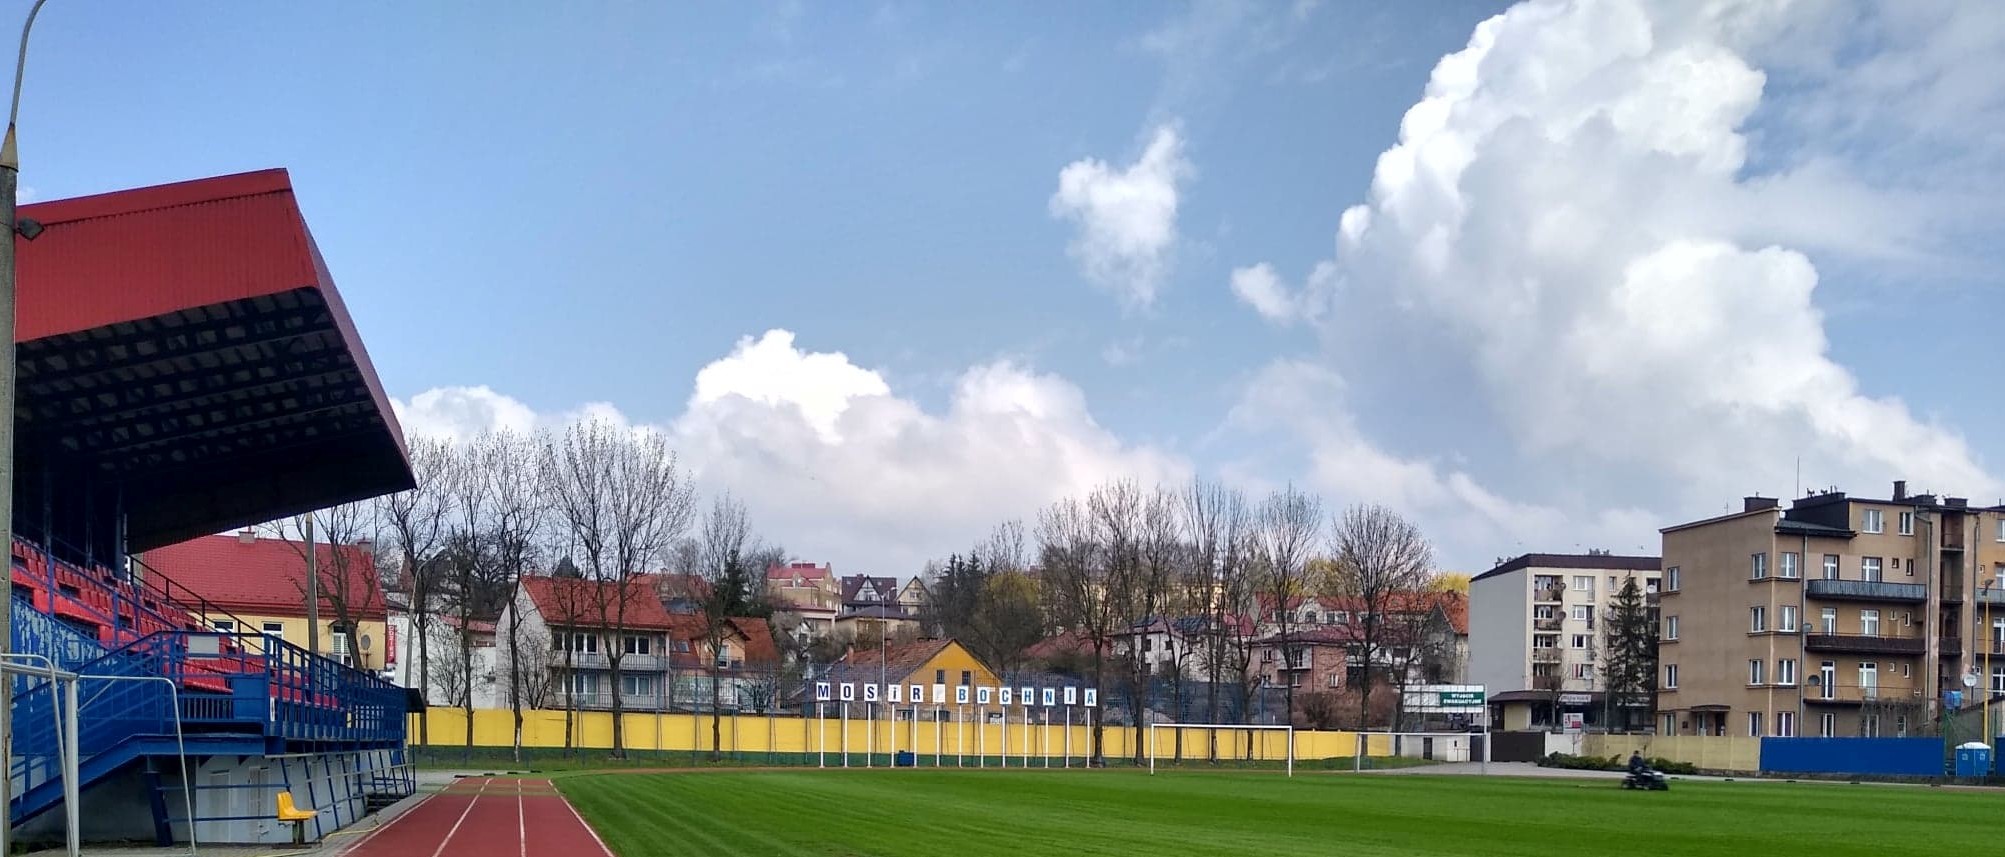 Murawa Stadionu Miejskiego w Bochni - 20.04.2021